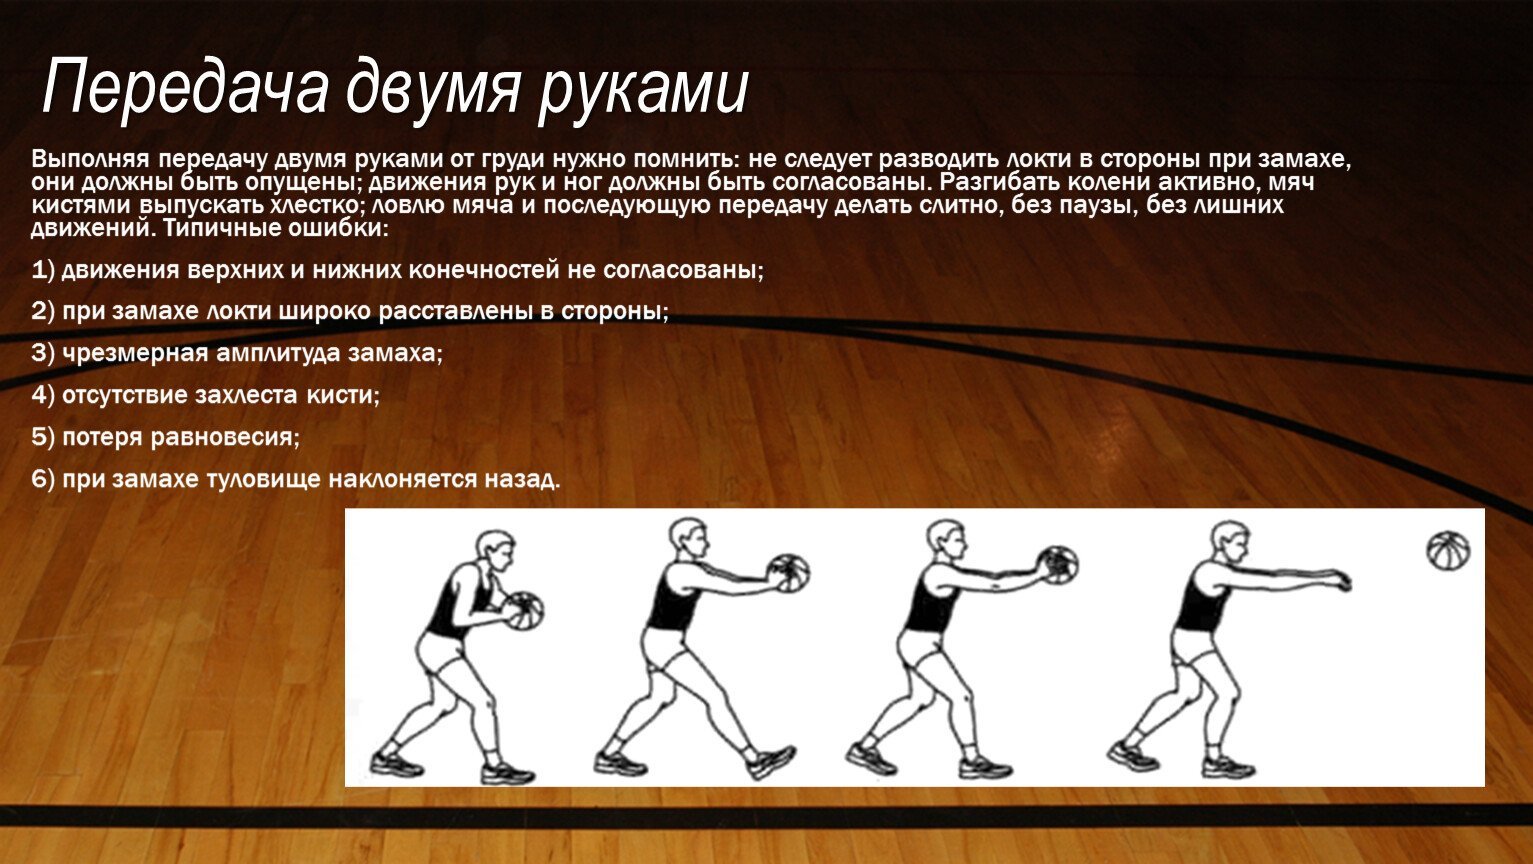 Этапы обучения баскетболу. Баскетбол ловля и передача мяча двумя руками от груди. Техника передачи мяча двумя руками от груди с места в баскетболе. Передача мяча в движении в баскетболе.